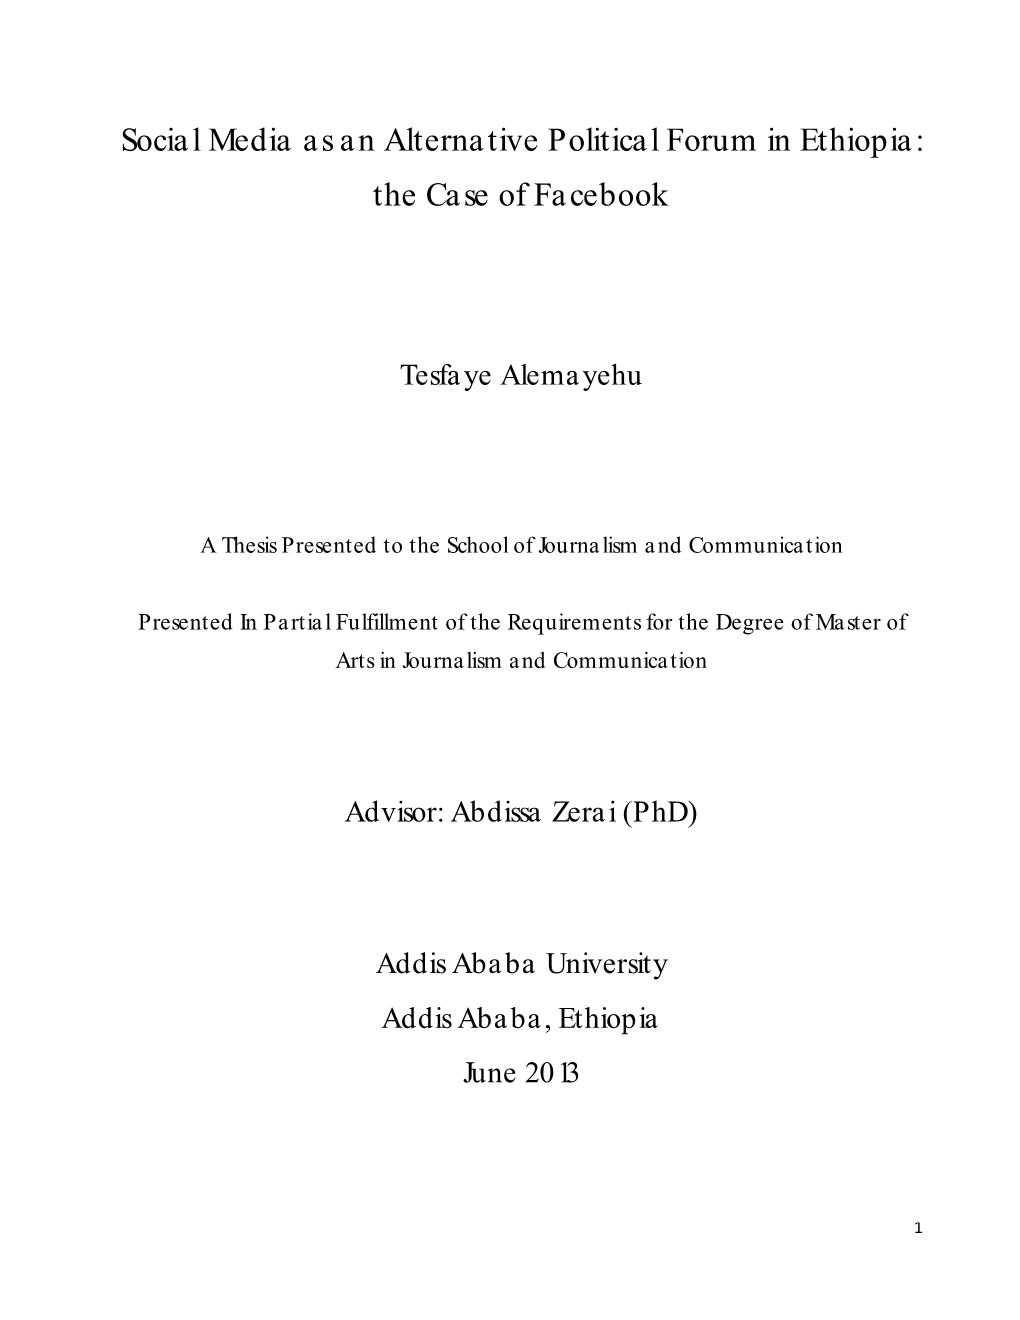 Social Media As an Alternative Political Forum in Ethiopia: the Case of Facebook